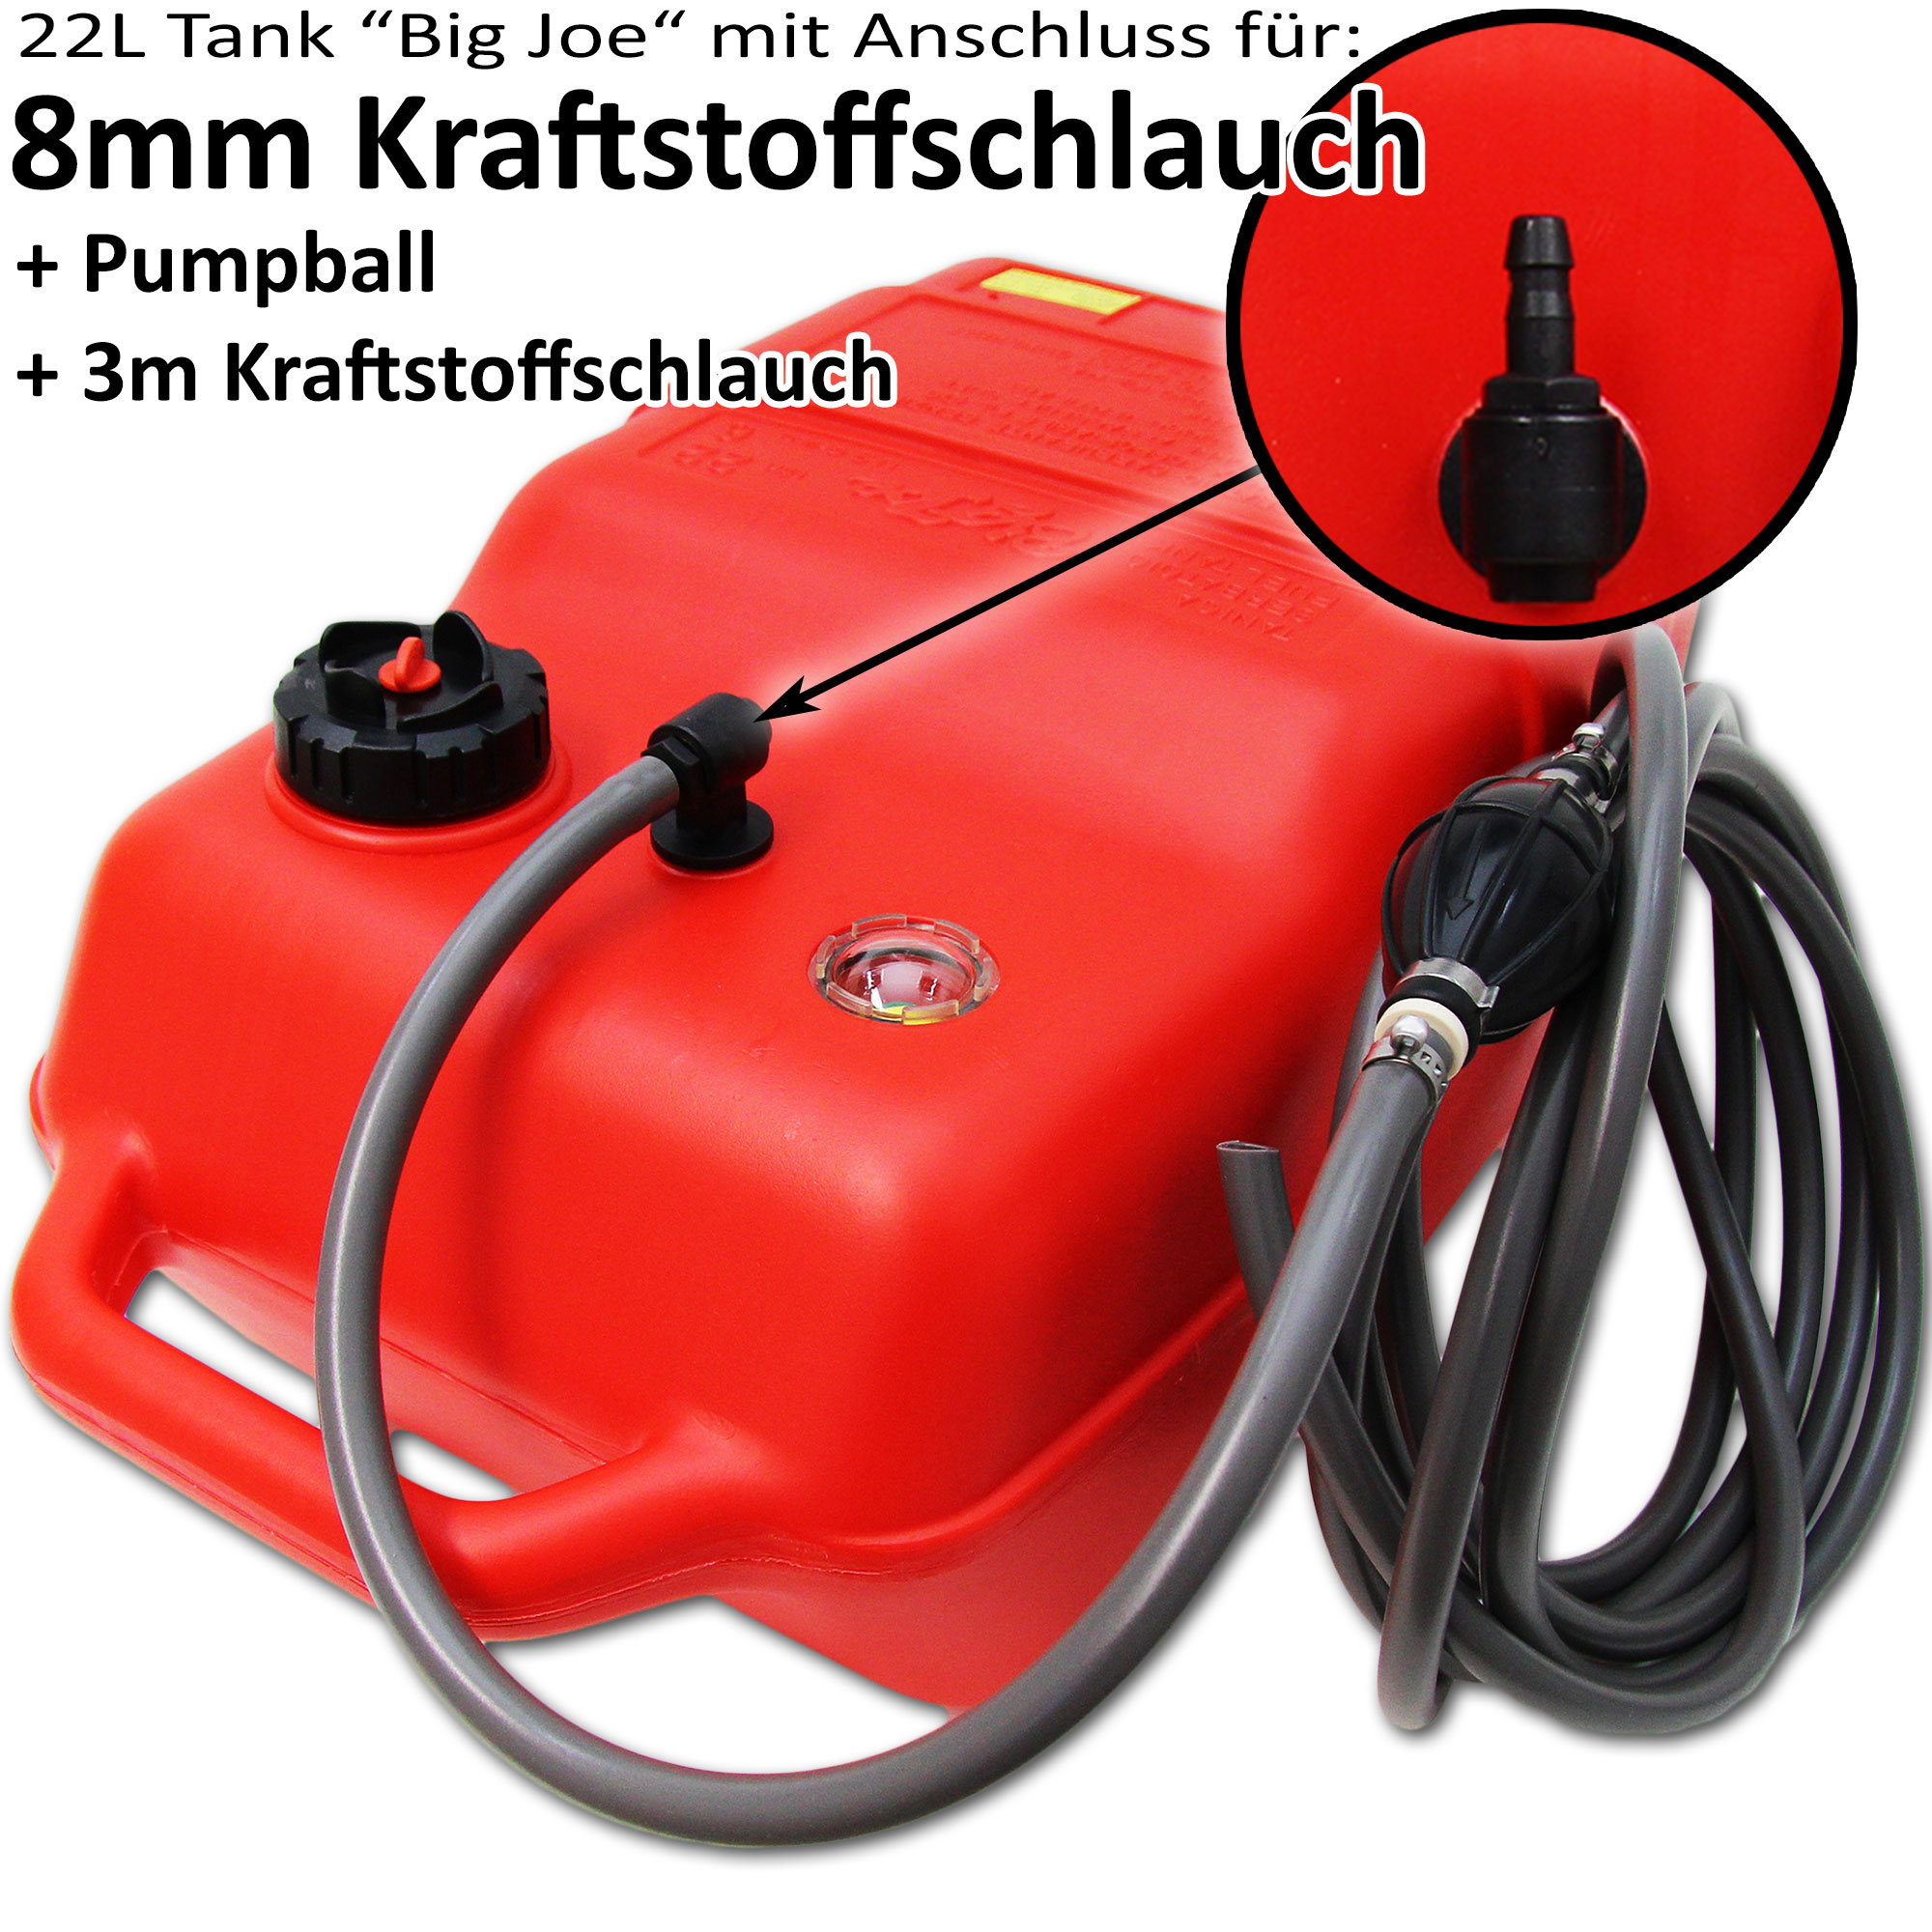 Kraftstofftank rot / Anschlussnippel (8mm) / 3m Schlauch / Füllstandsanzeige manuell